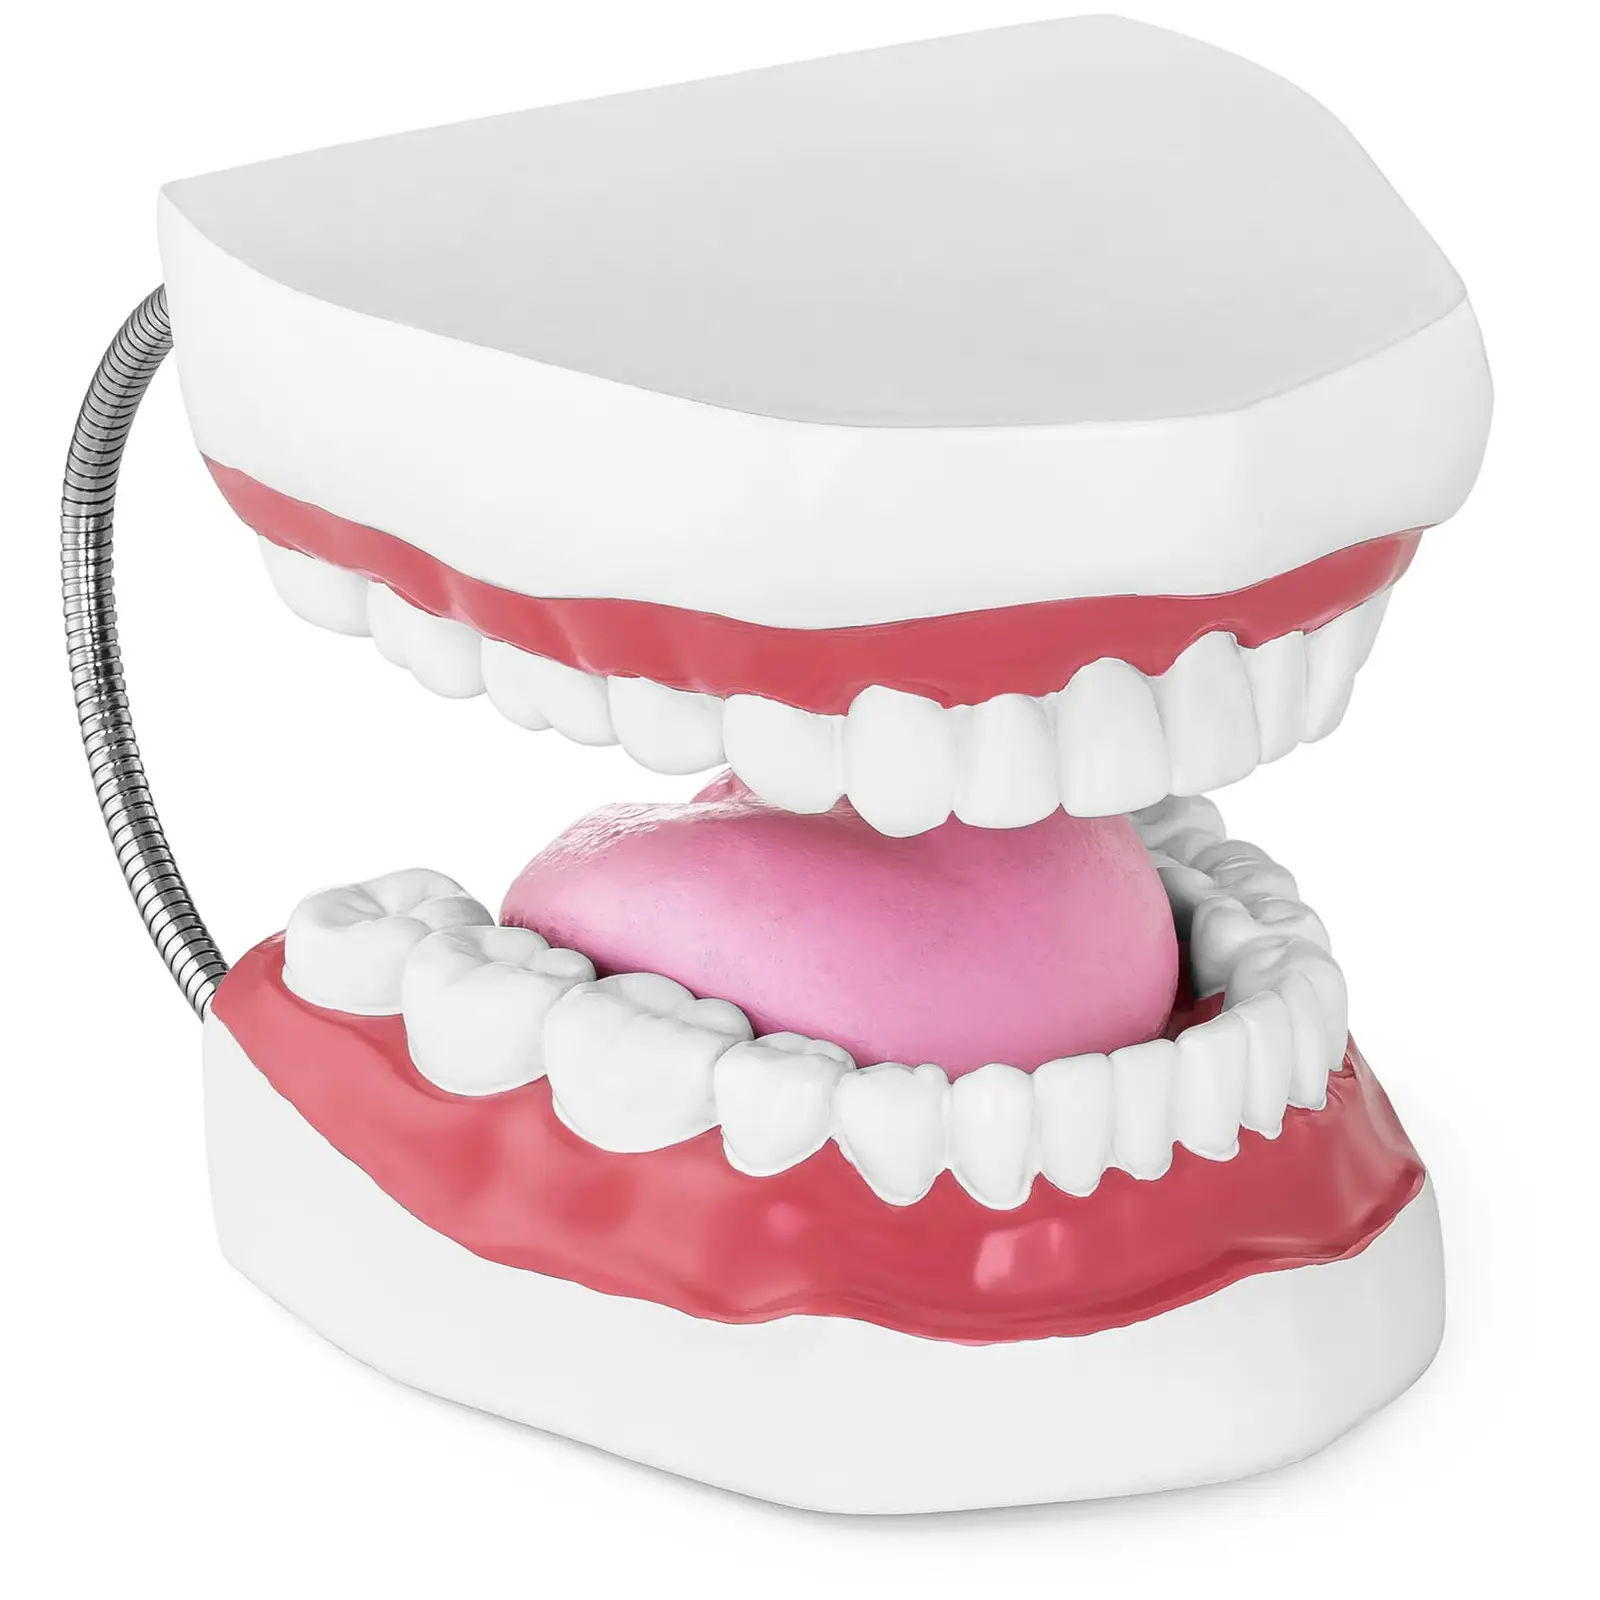 Teeth Model - Set of Teeth